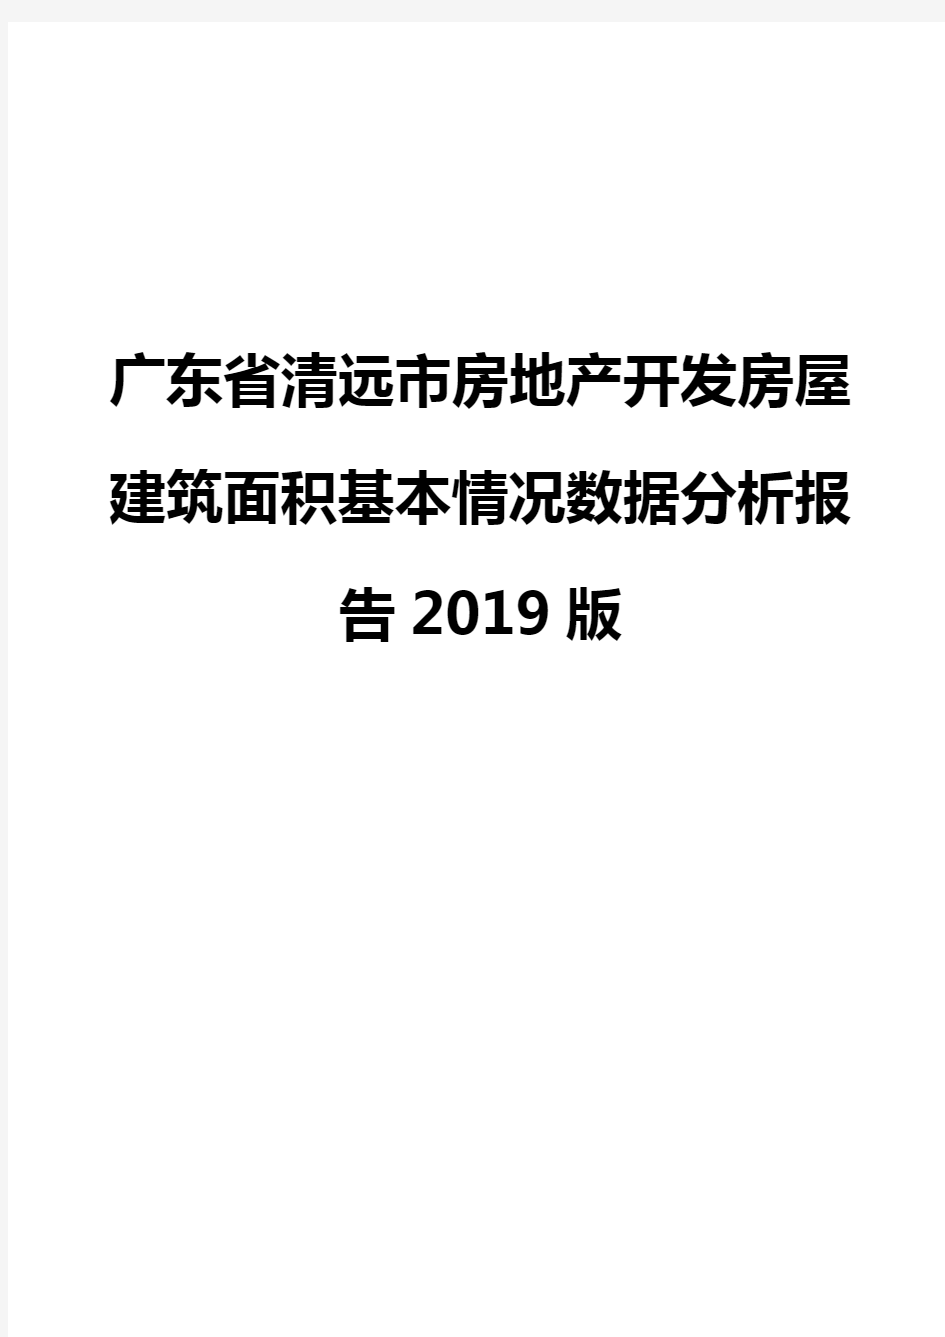 广东省清远市房地产开发房屋建筑面积基本情况数据分析报告2019版